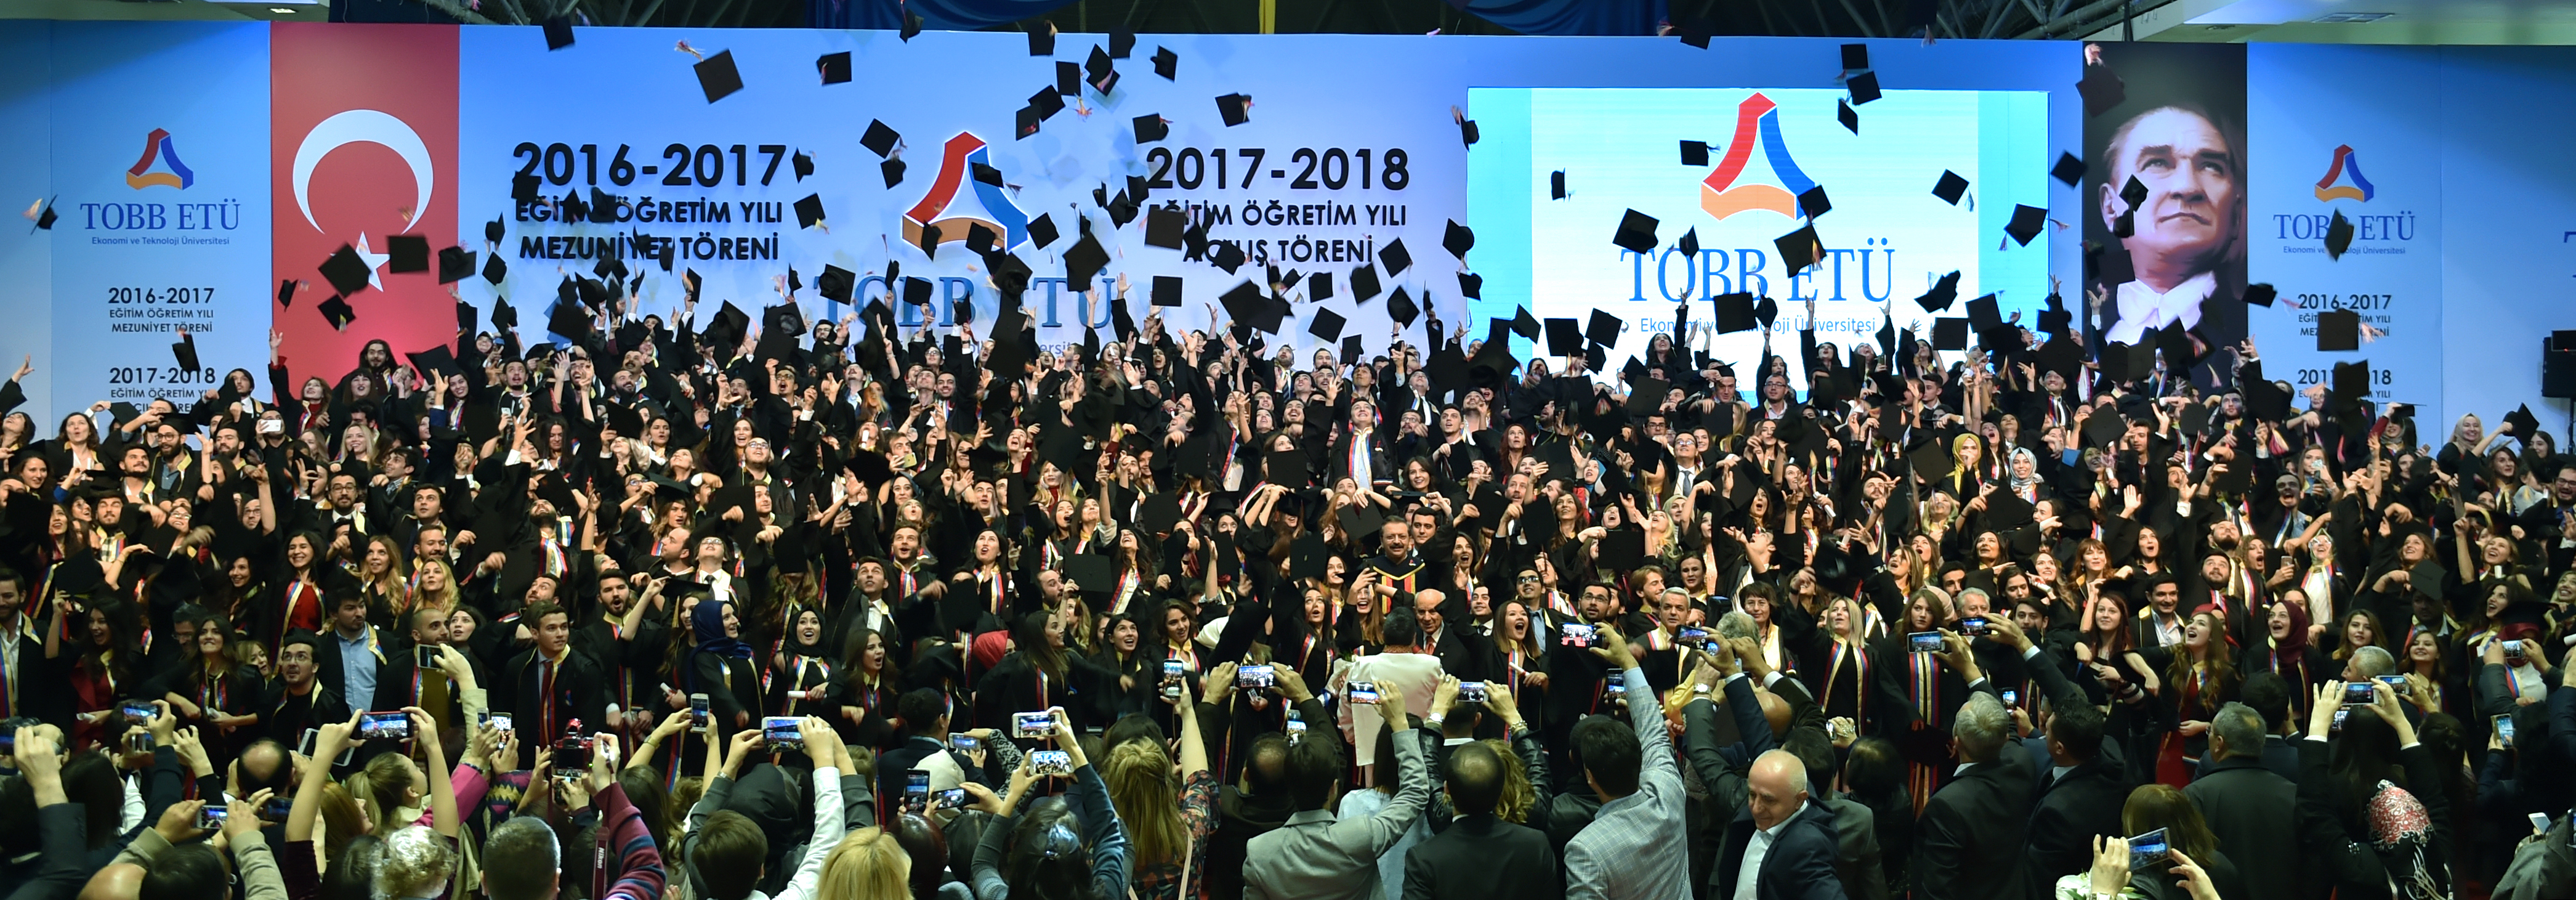 TOBB ETÜ'de 2016 - 2017 Akademik Yılı Mezuniyet ve 2017 - 2018 Akademik Yılı Açılış Töreni Heyecanı Yaşandı